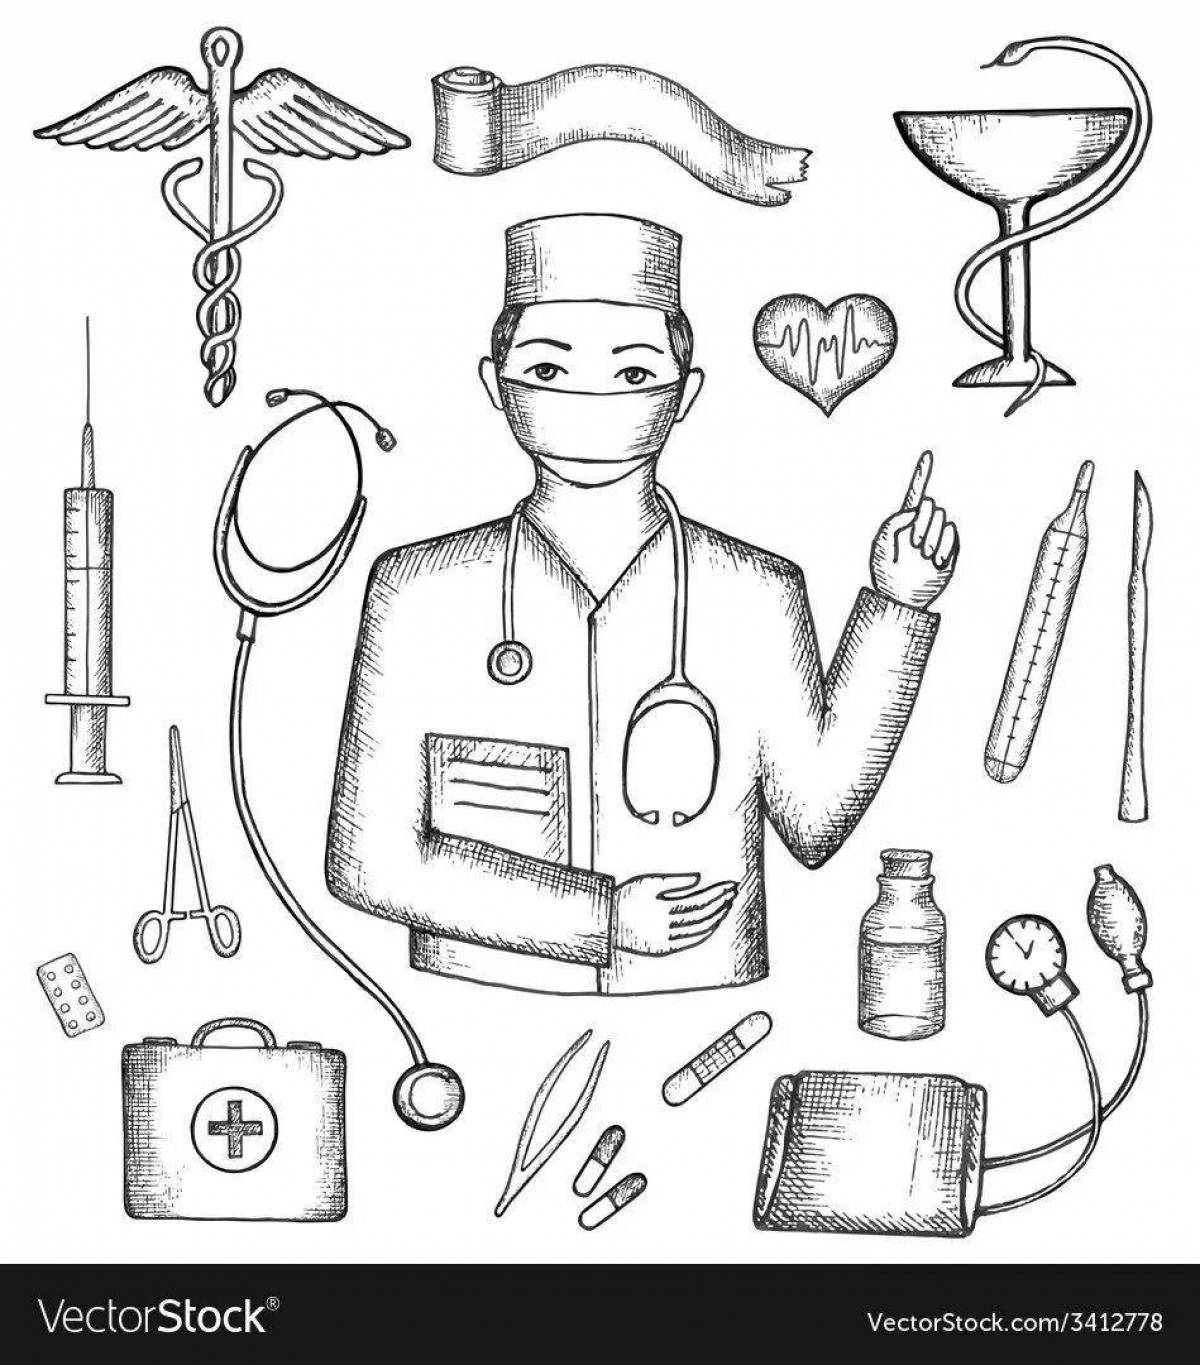 Раскраска «инновационный хирург» для детей